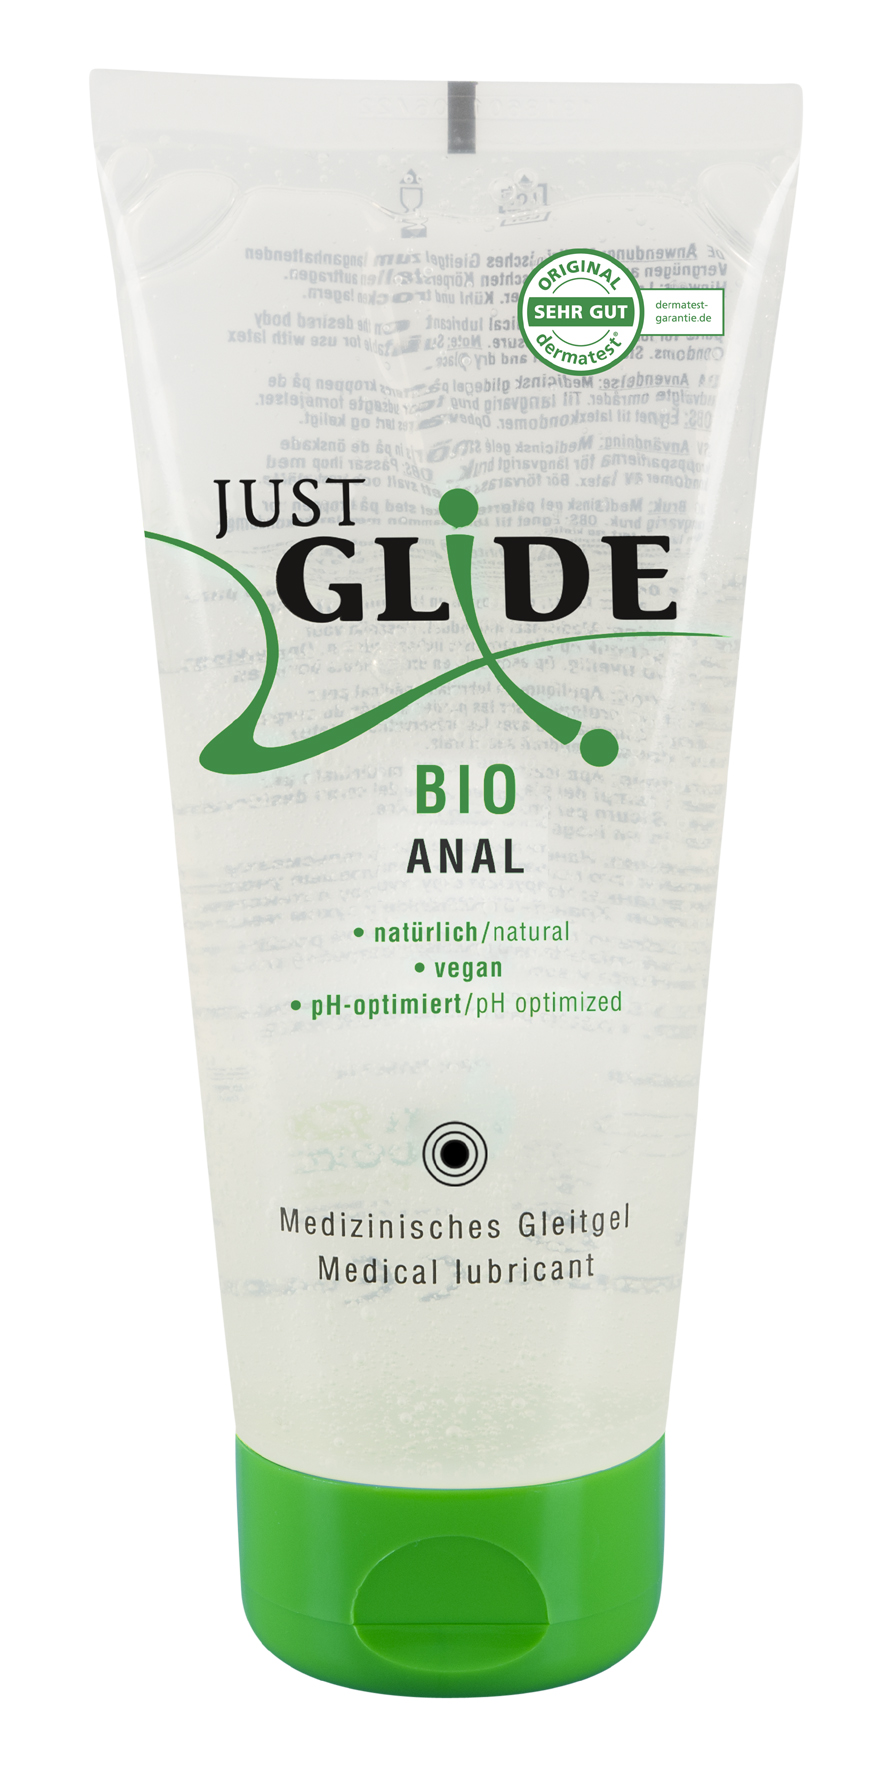 Just Glide Bio Anal 200ml | 200ml | 300000091030